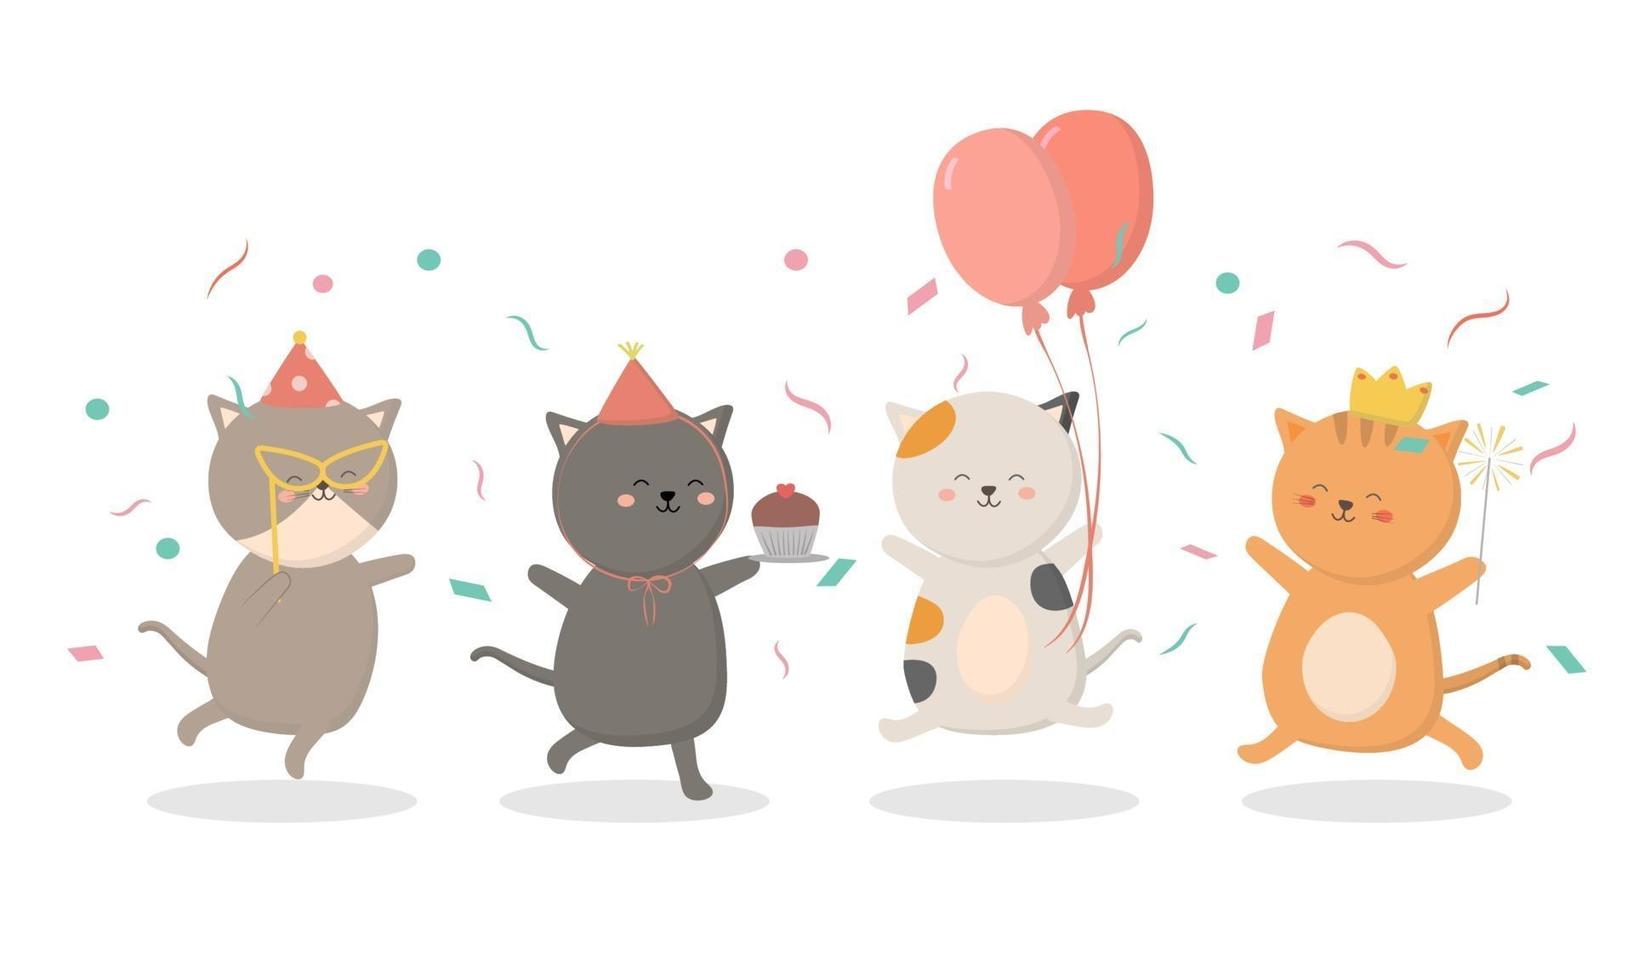 preparação da festa de aniversário do gato juntos eles decoraram o local com balões vetor